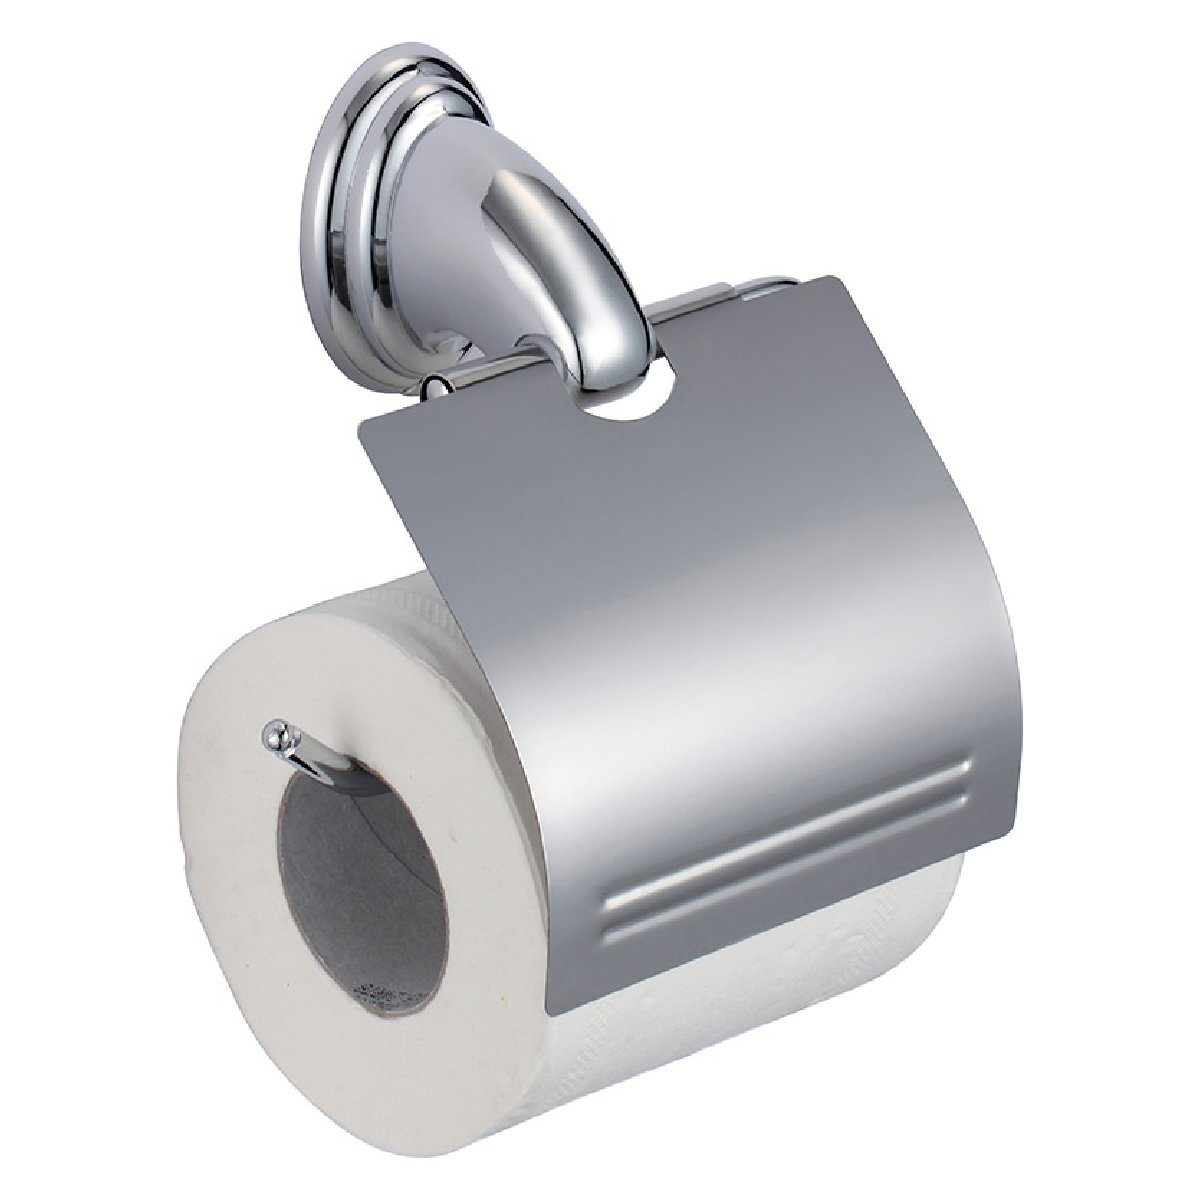 Держатель для туалетной бумаги BA-PH-1, 5.3x11.8x15.5см (хром. металл, крепление шуруп) 310808Купить